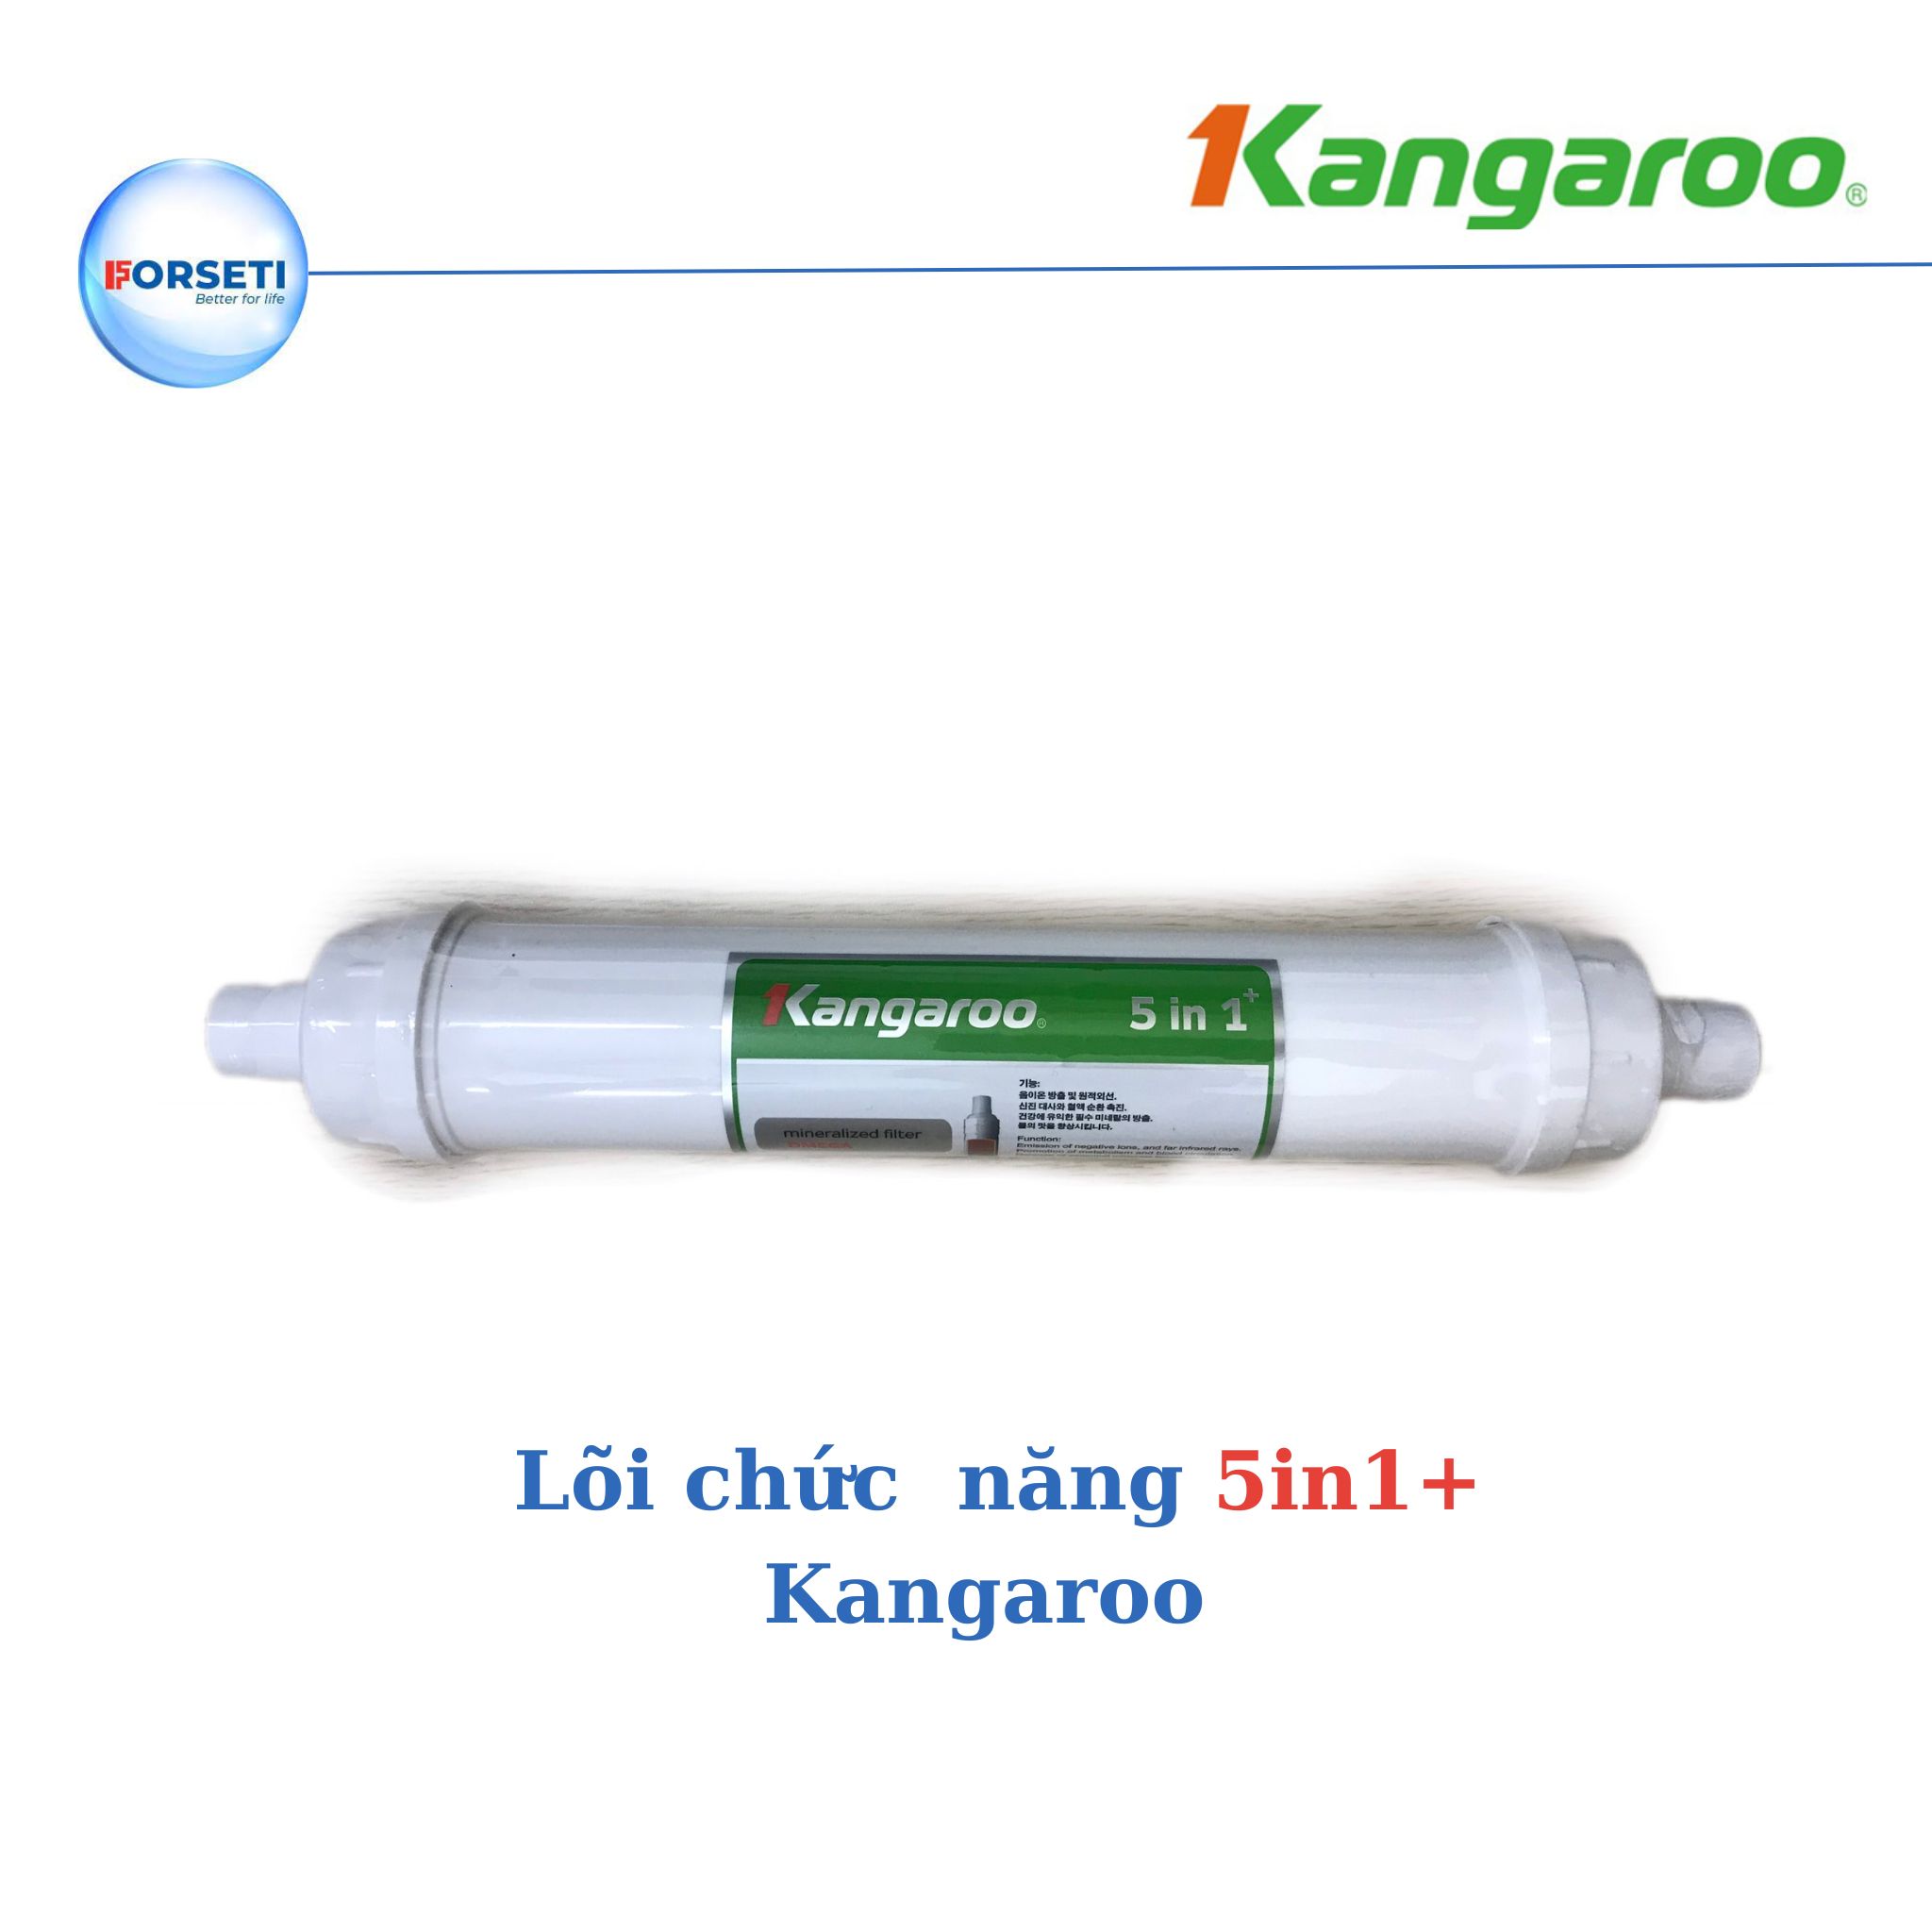 Lõi lọc Kangaroo lõi lọc số 9 - Nano+ dùng cho máy lọc nước Kangaroo Hydrogen - Hàng chính hãng